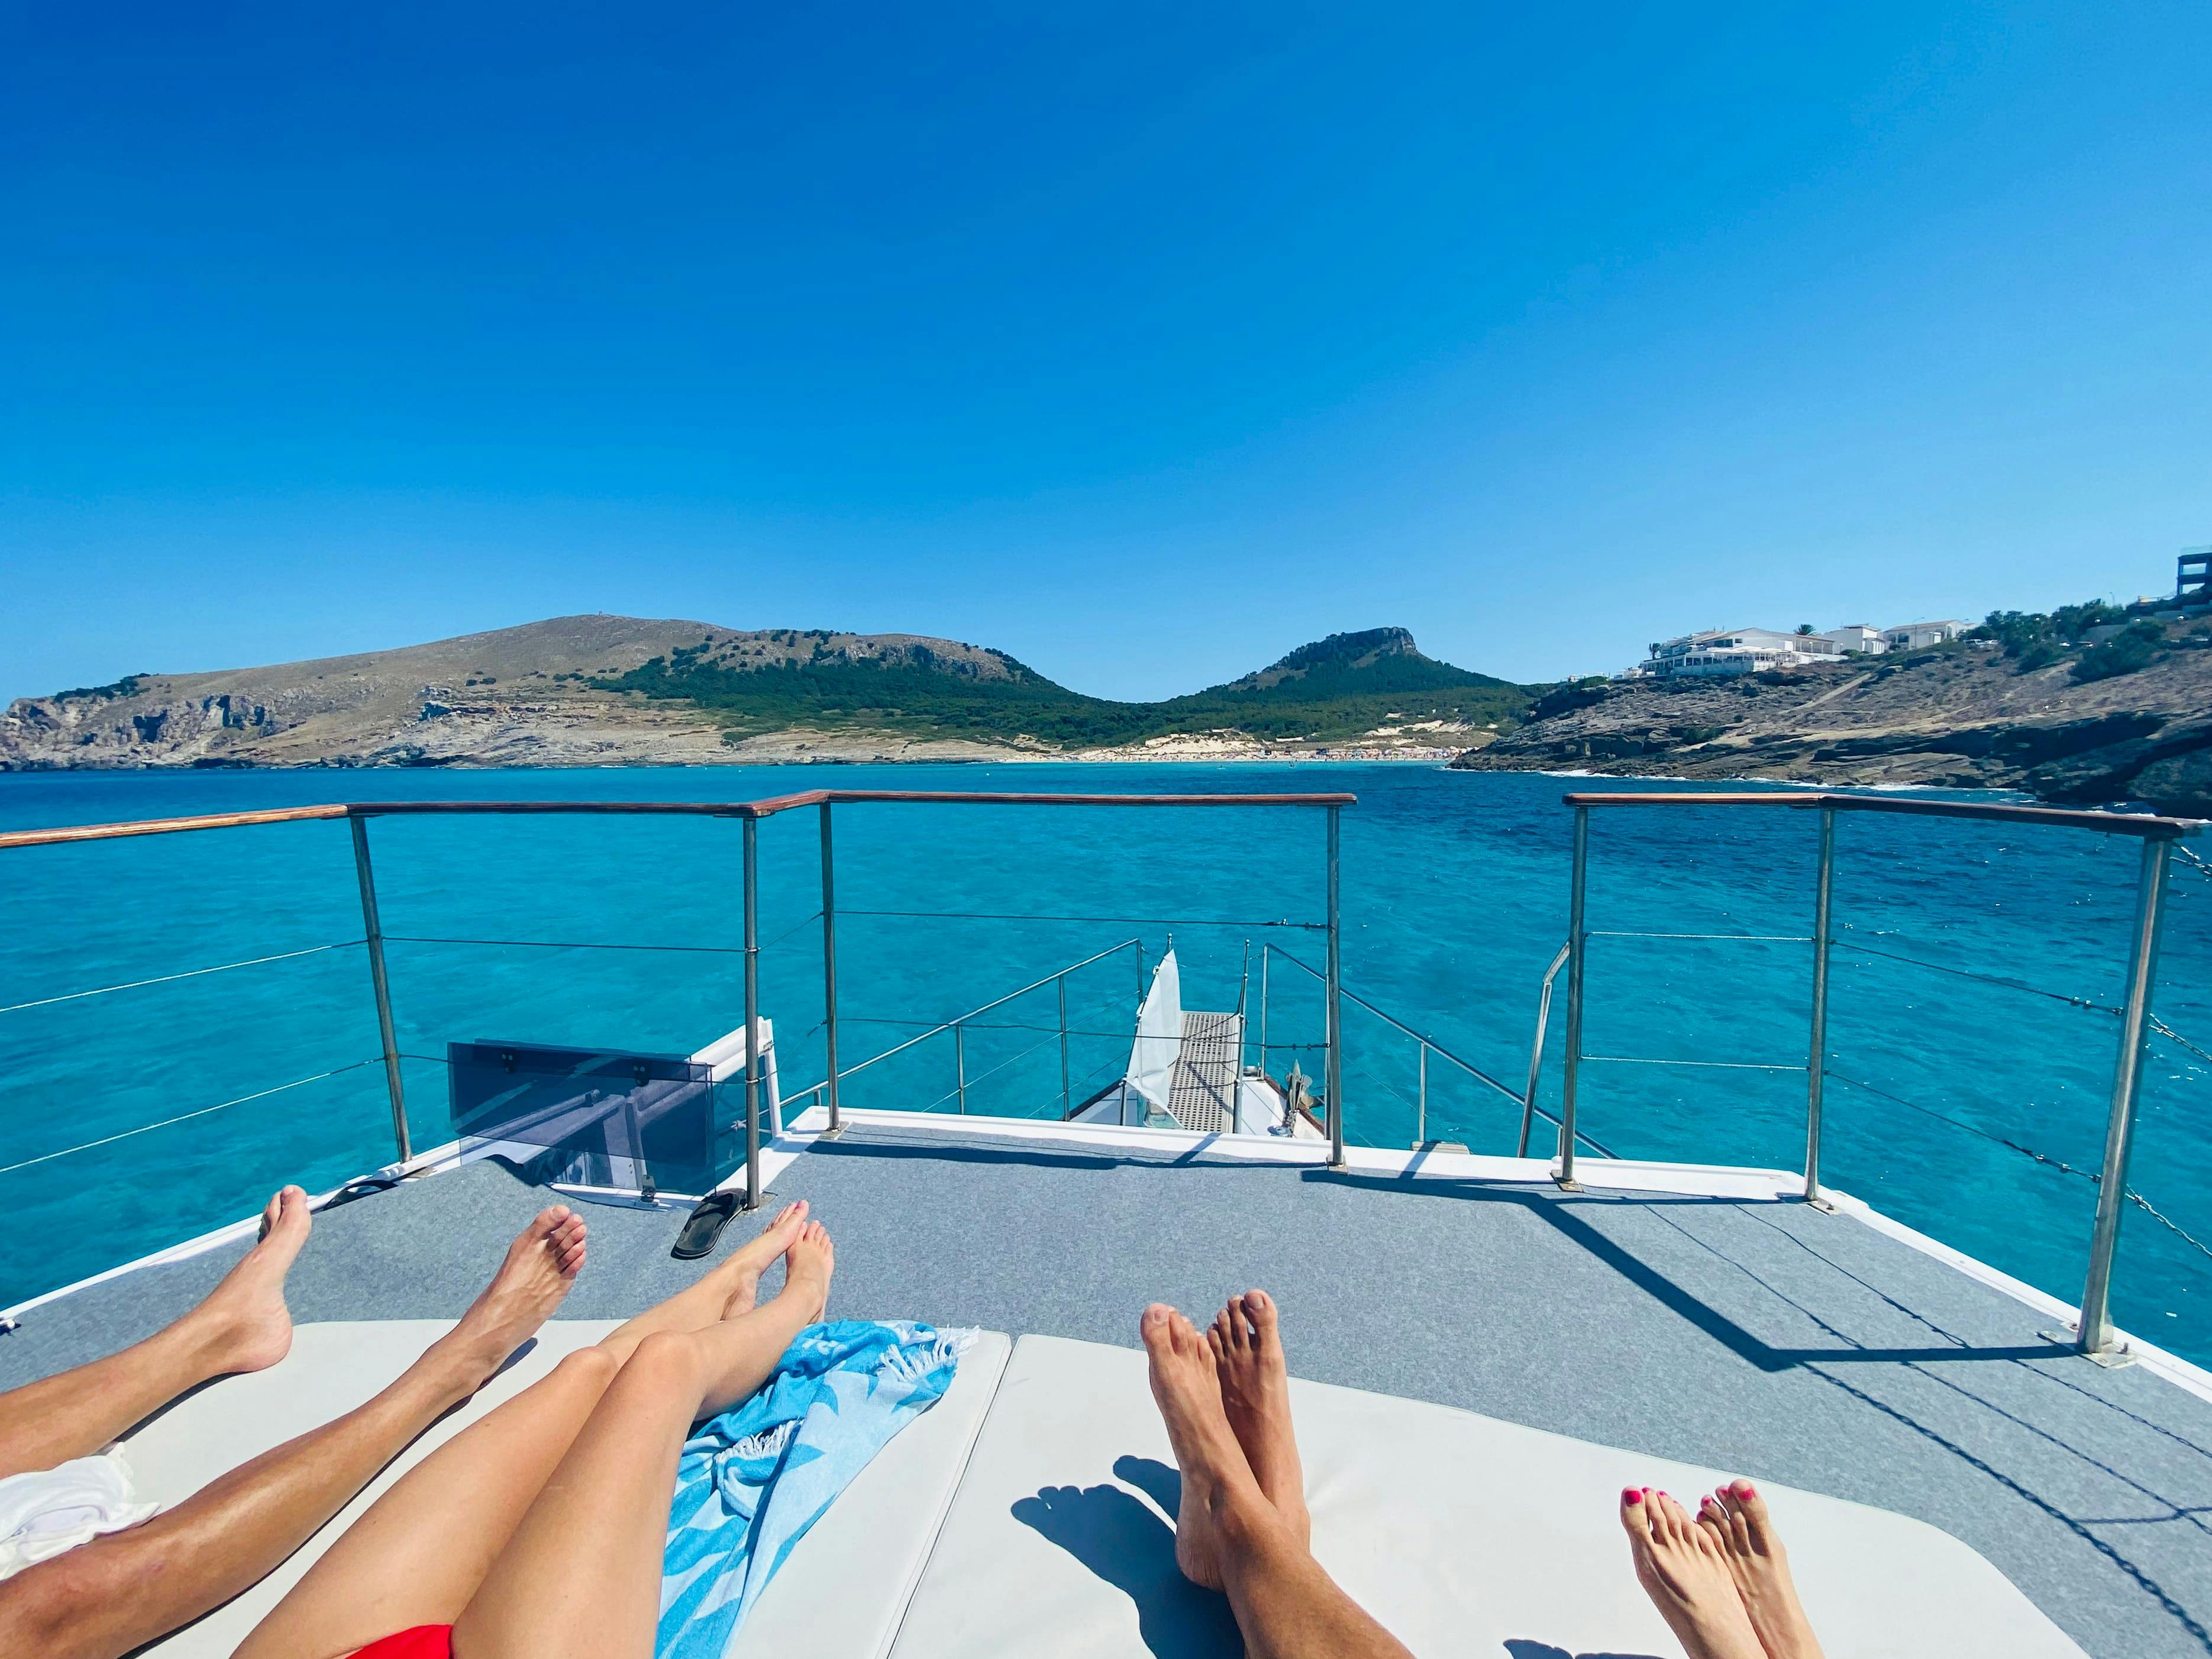 Mallorca Dreams Boat Tour with Transfer